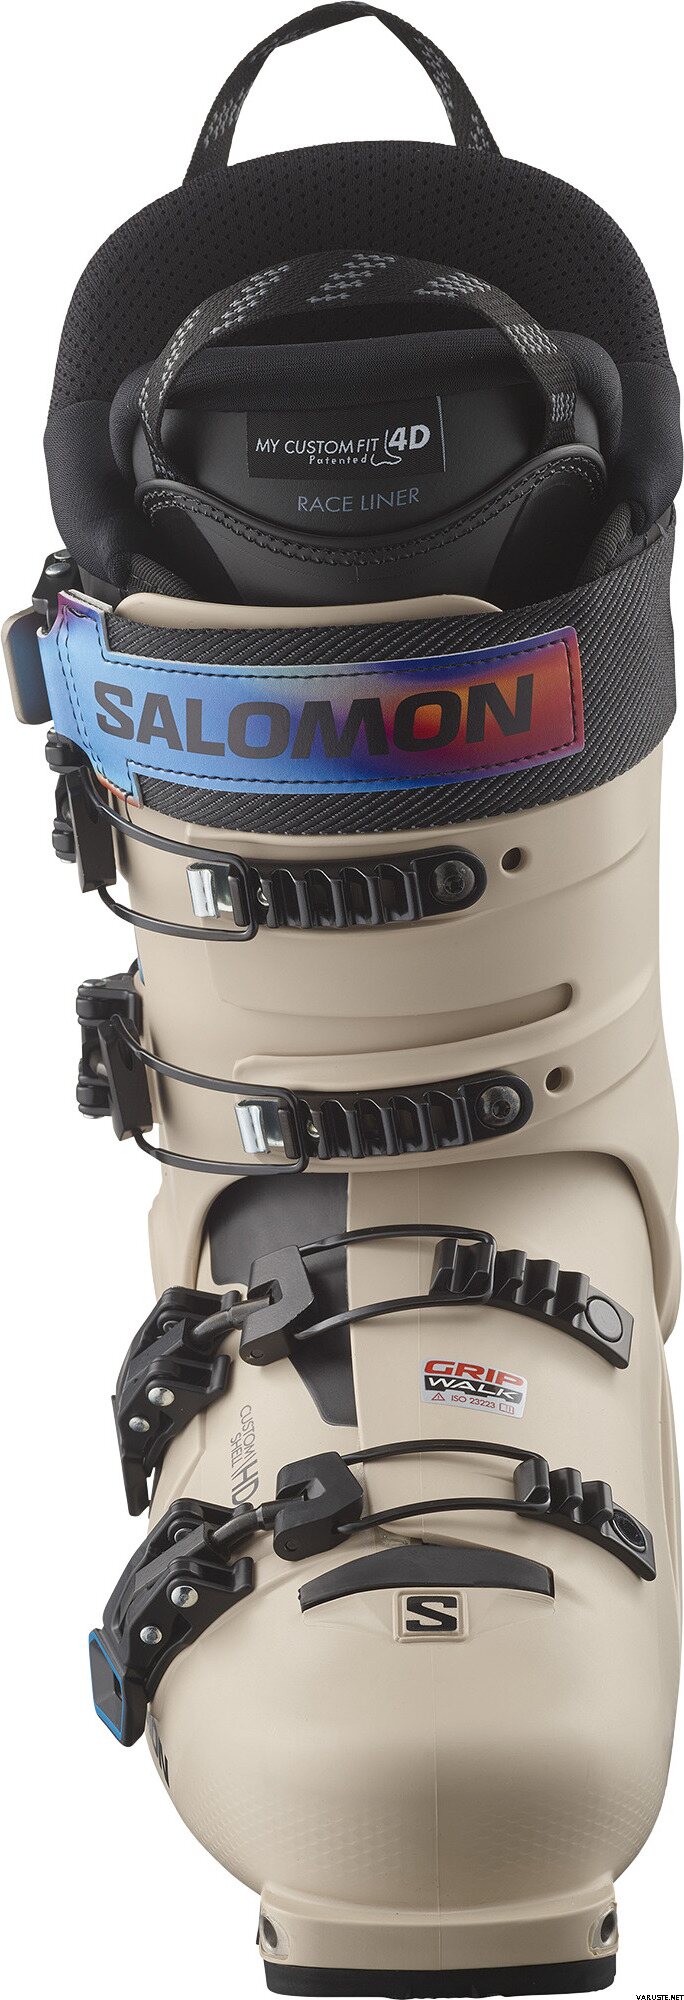 Salomon Shift Pro 130 AT | Ski Boots | Varuste.net 日本語